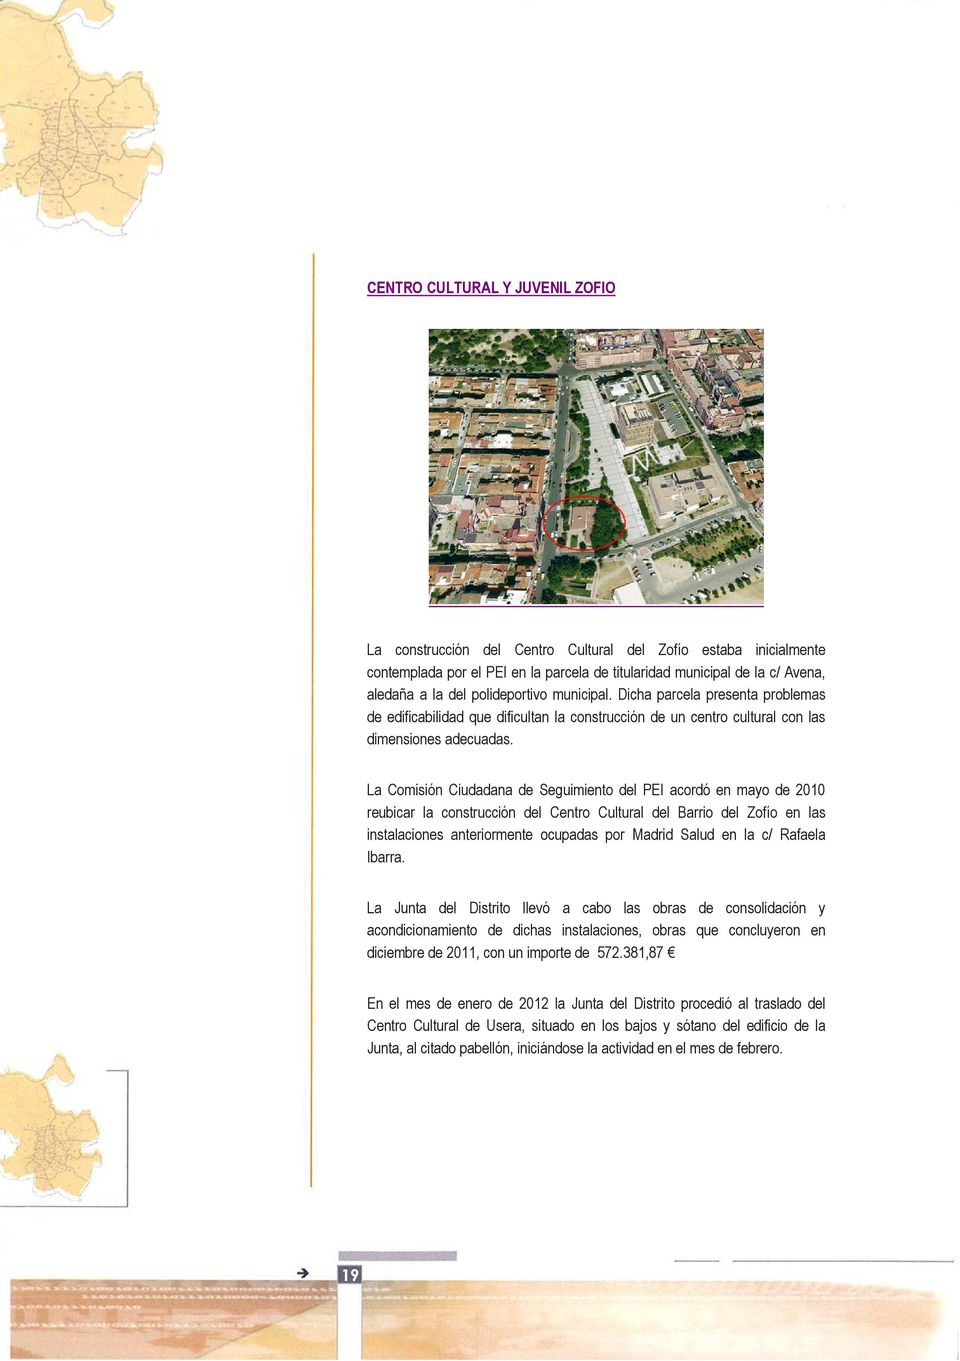 La Comisión Ciudadana de Seguimiento del PEI acordó en mayo de 2010 reubicar la construcción del Centro Cultural del Barrio del Zofío en las instalaciones anteriormente ocupadas por Madrid Salud en